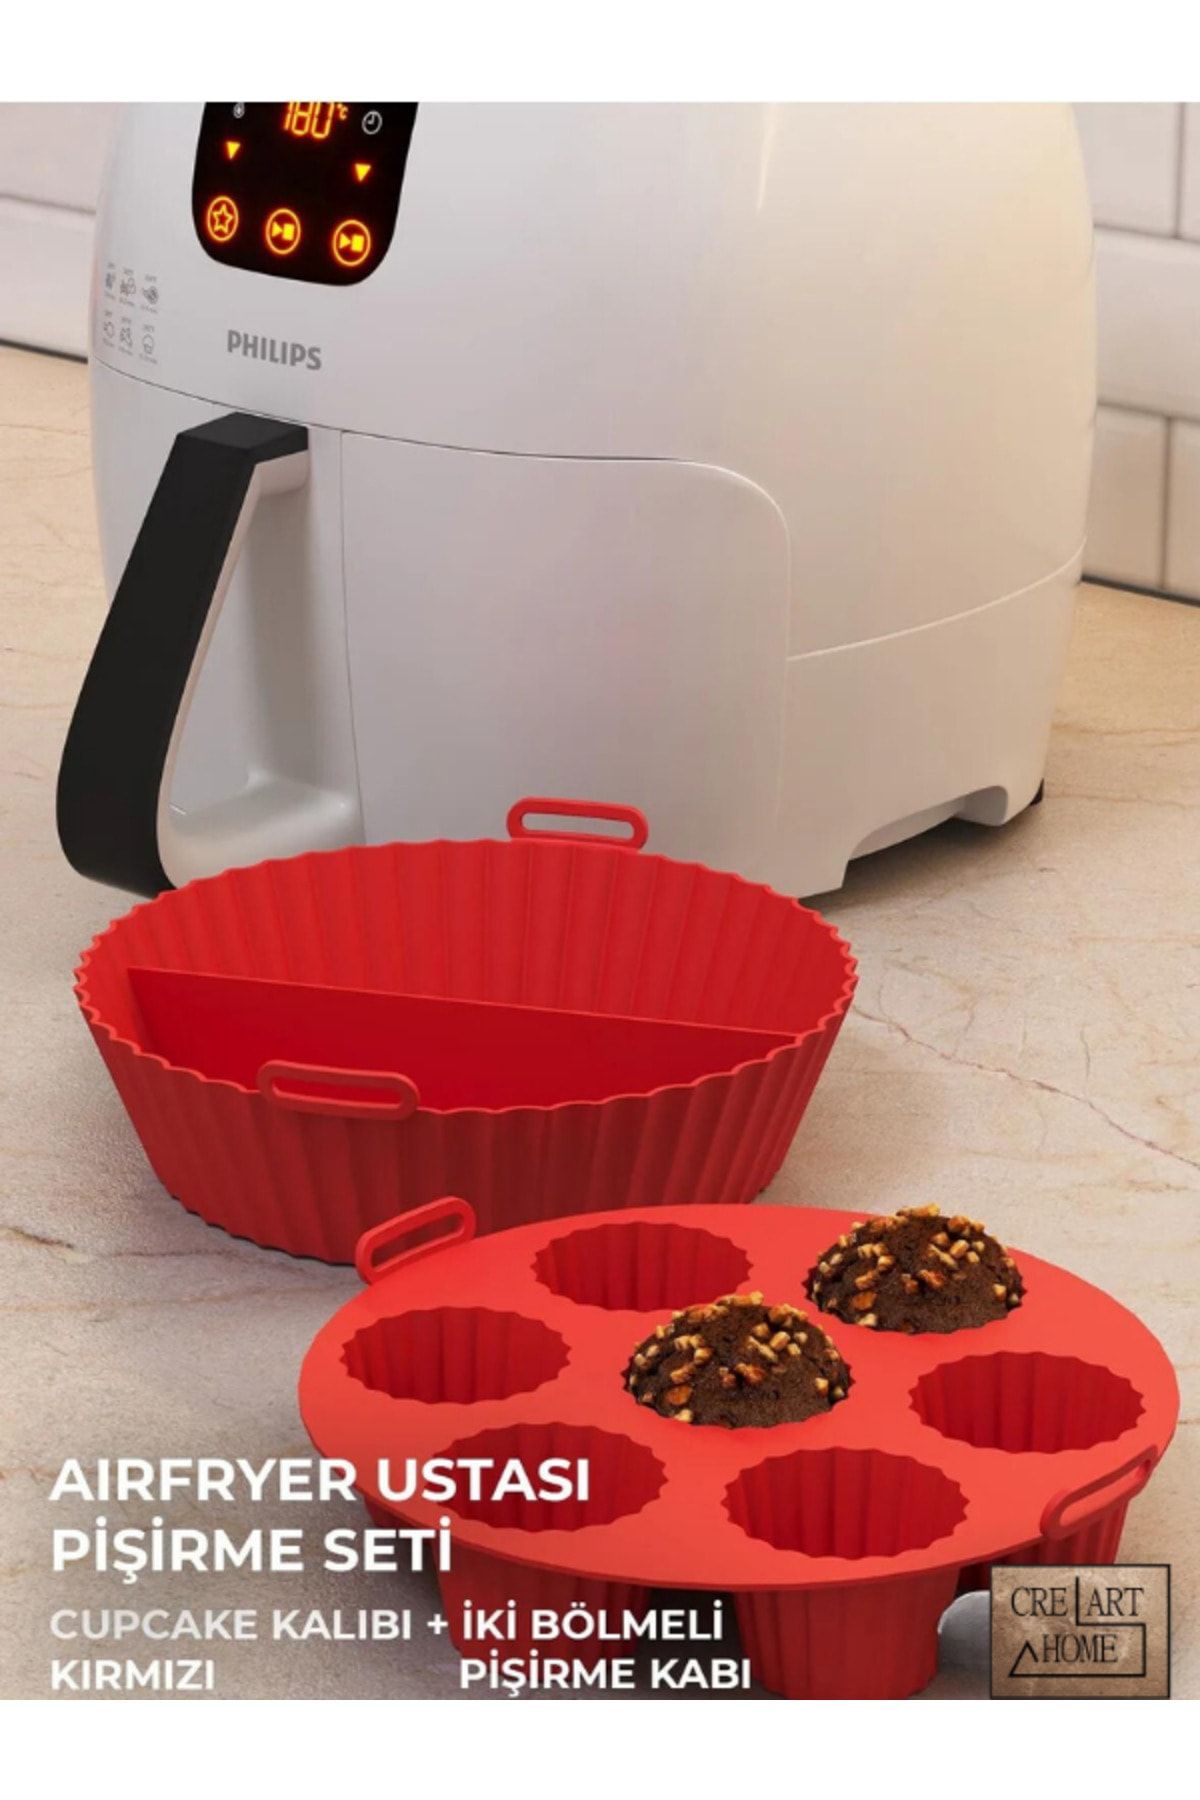 CREARTHOME Airfryer Ustası Pişirme Seti 2'li - Airfryer Pişirme Silikon Kağıdı Aksesuar Kırmızı Renk Bpa Free